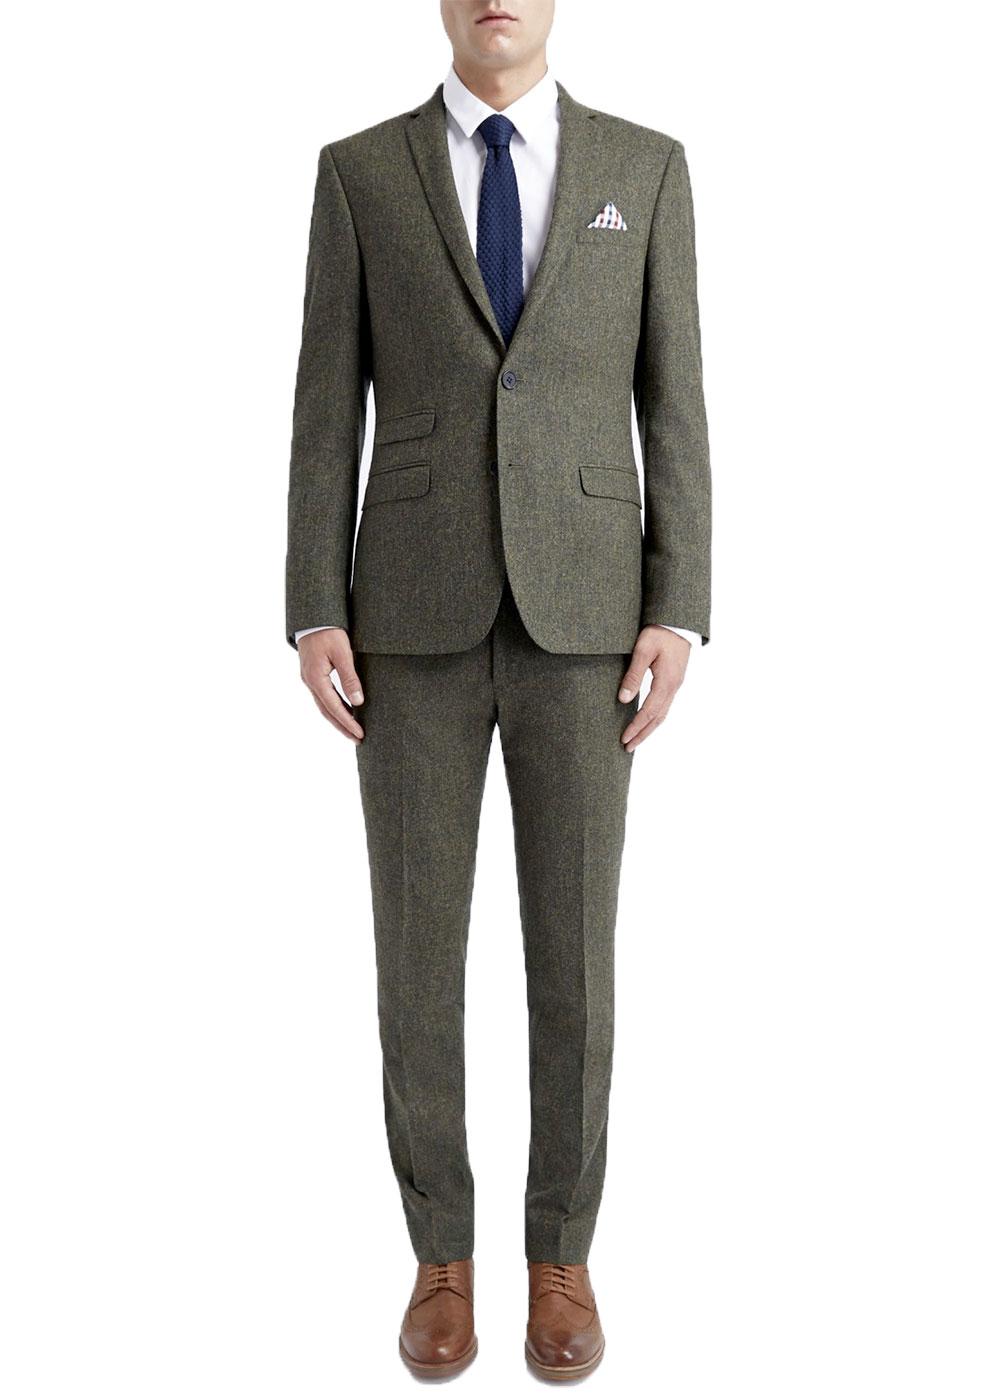 BEN SHERMAN Tailoring Mod 2 Button Tweed Suit